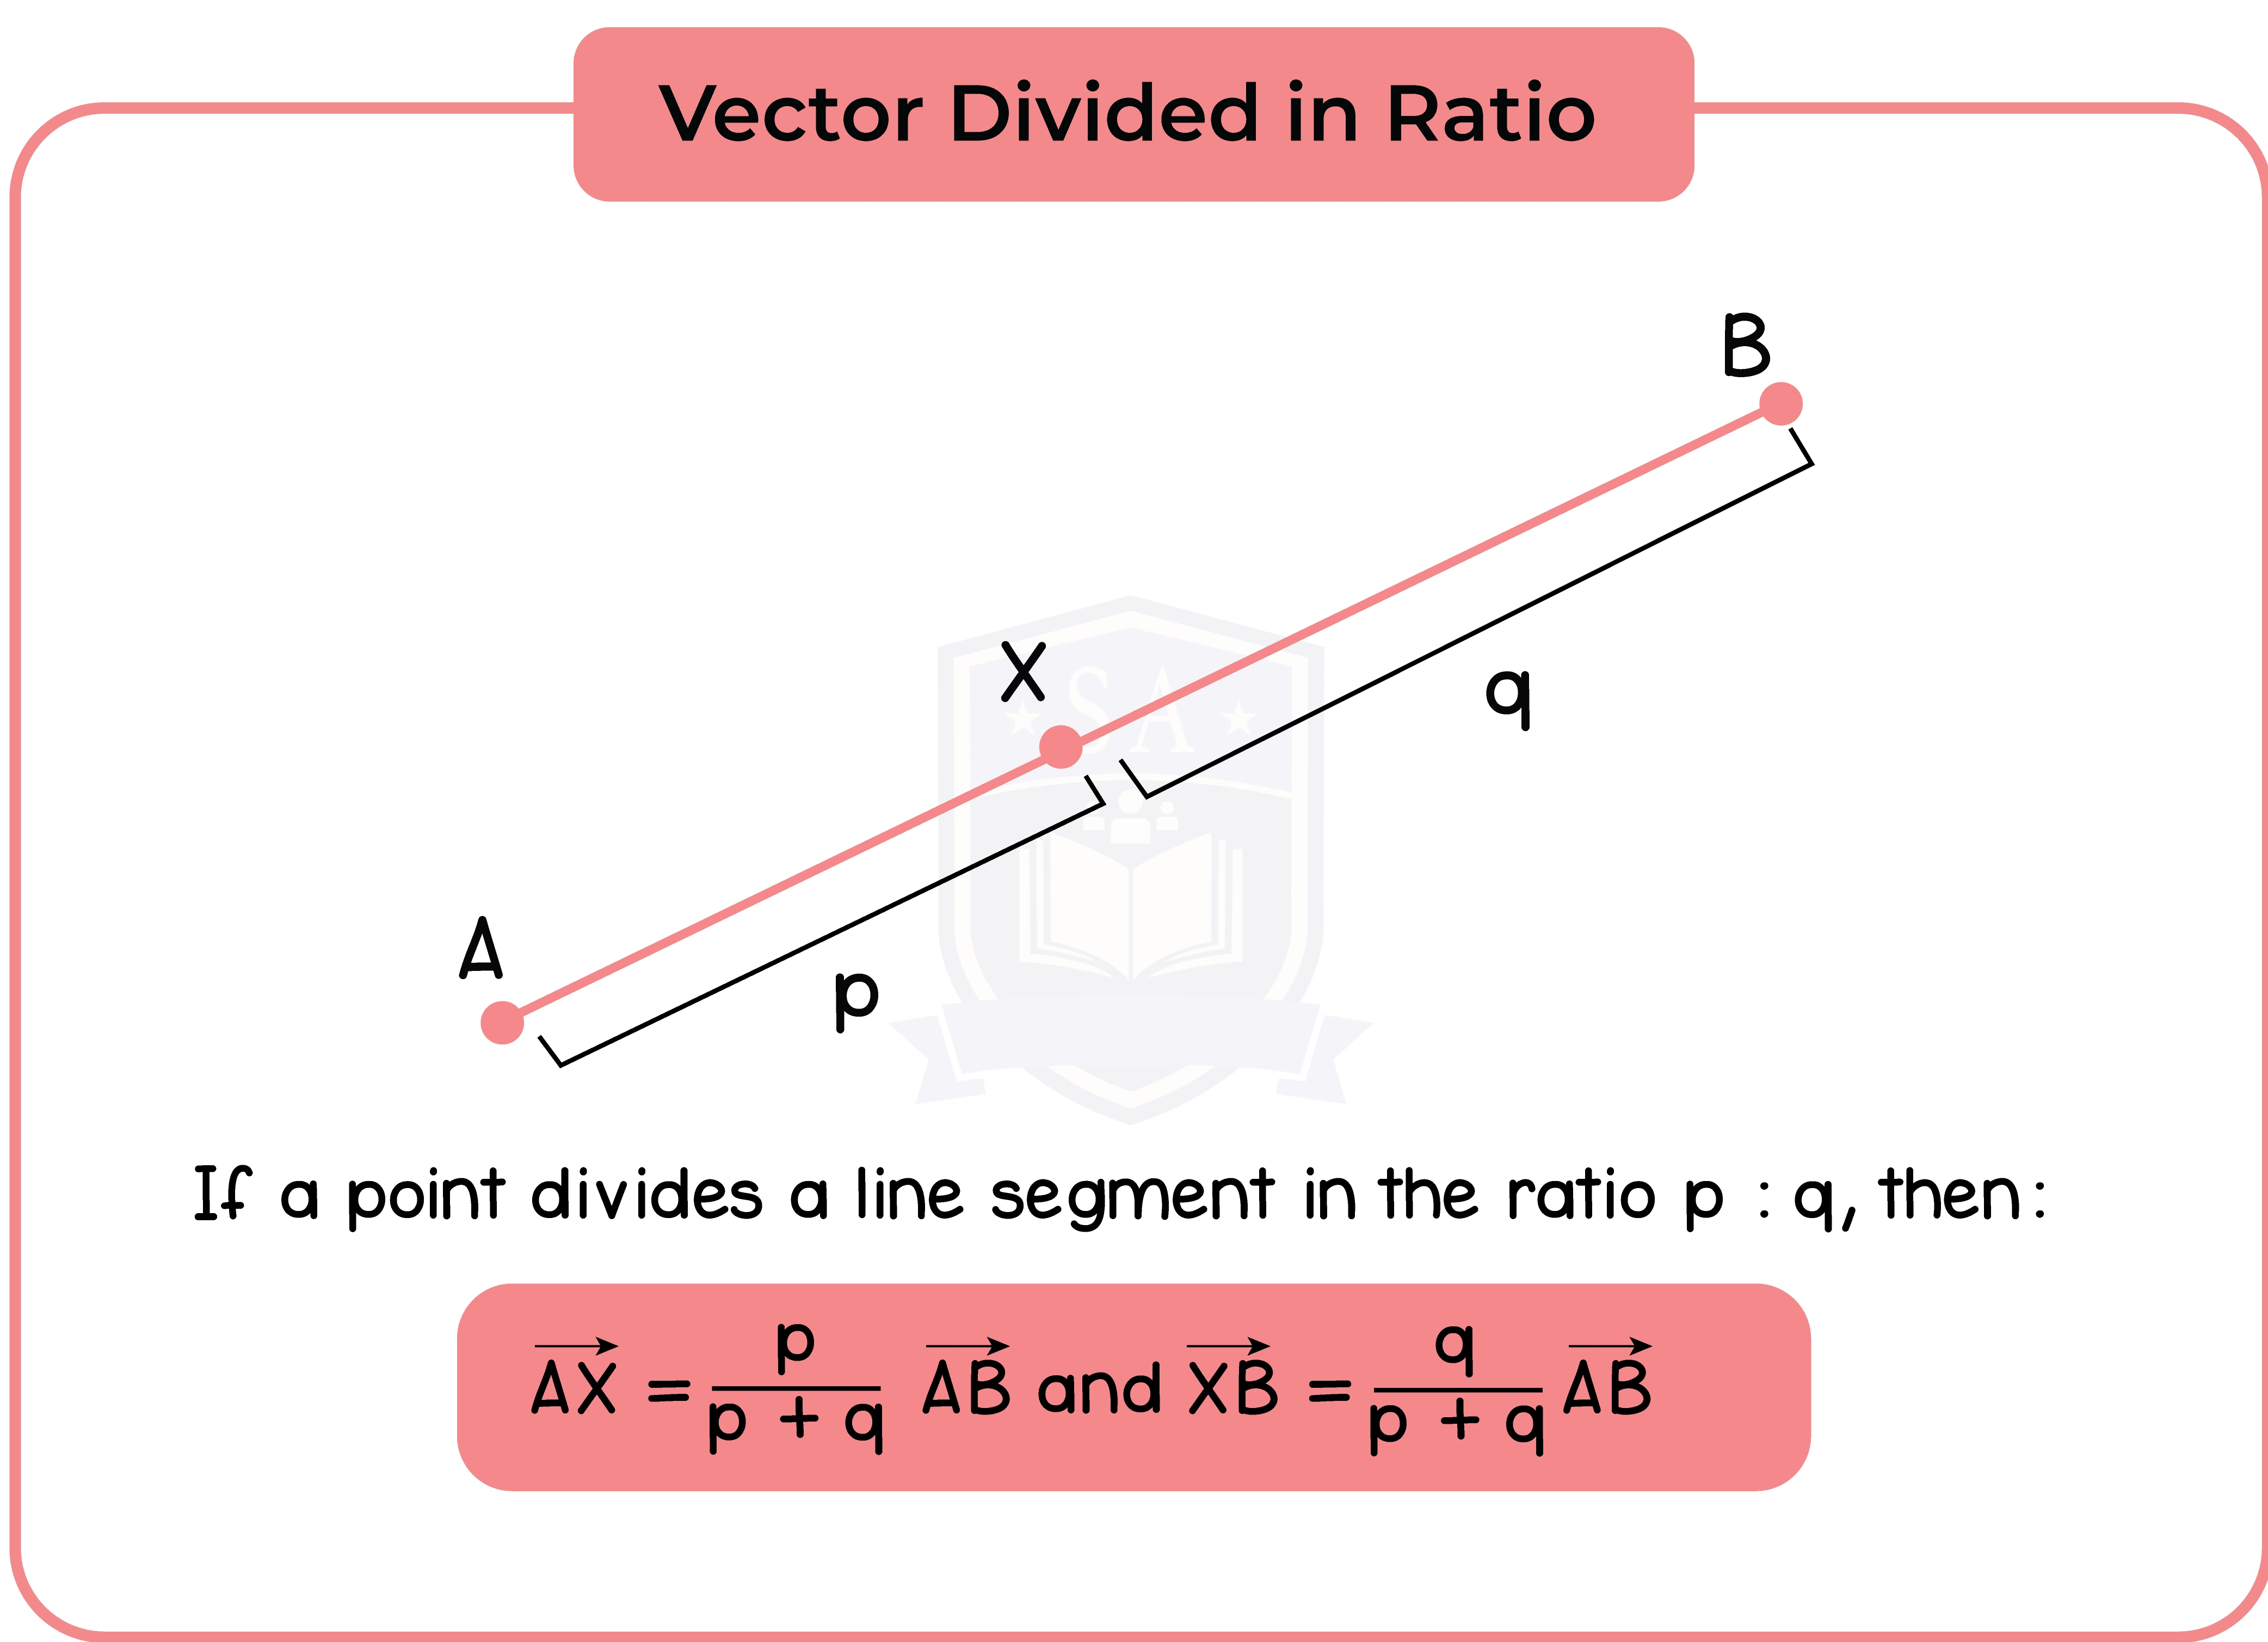 edexcel_igcse_mathematics a_topic 36_vectors_010_Vector Divided in Ratio